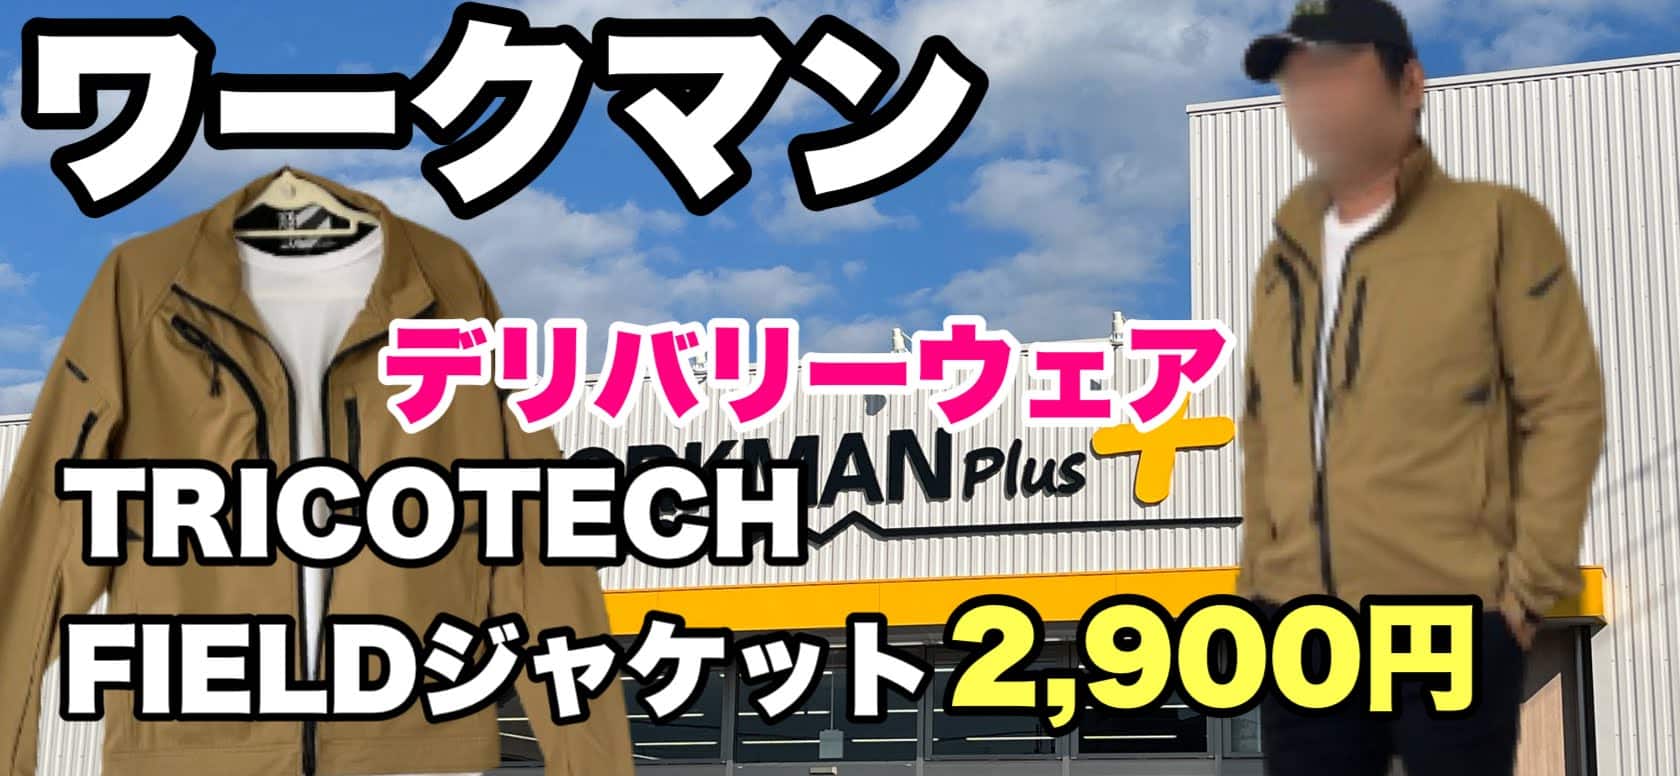 【ワークマン】TRICO TECH(トリコテック)FIELDジャケット3Lサイズ感